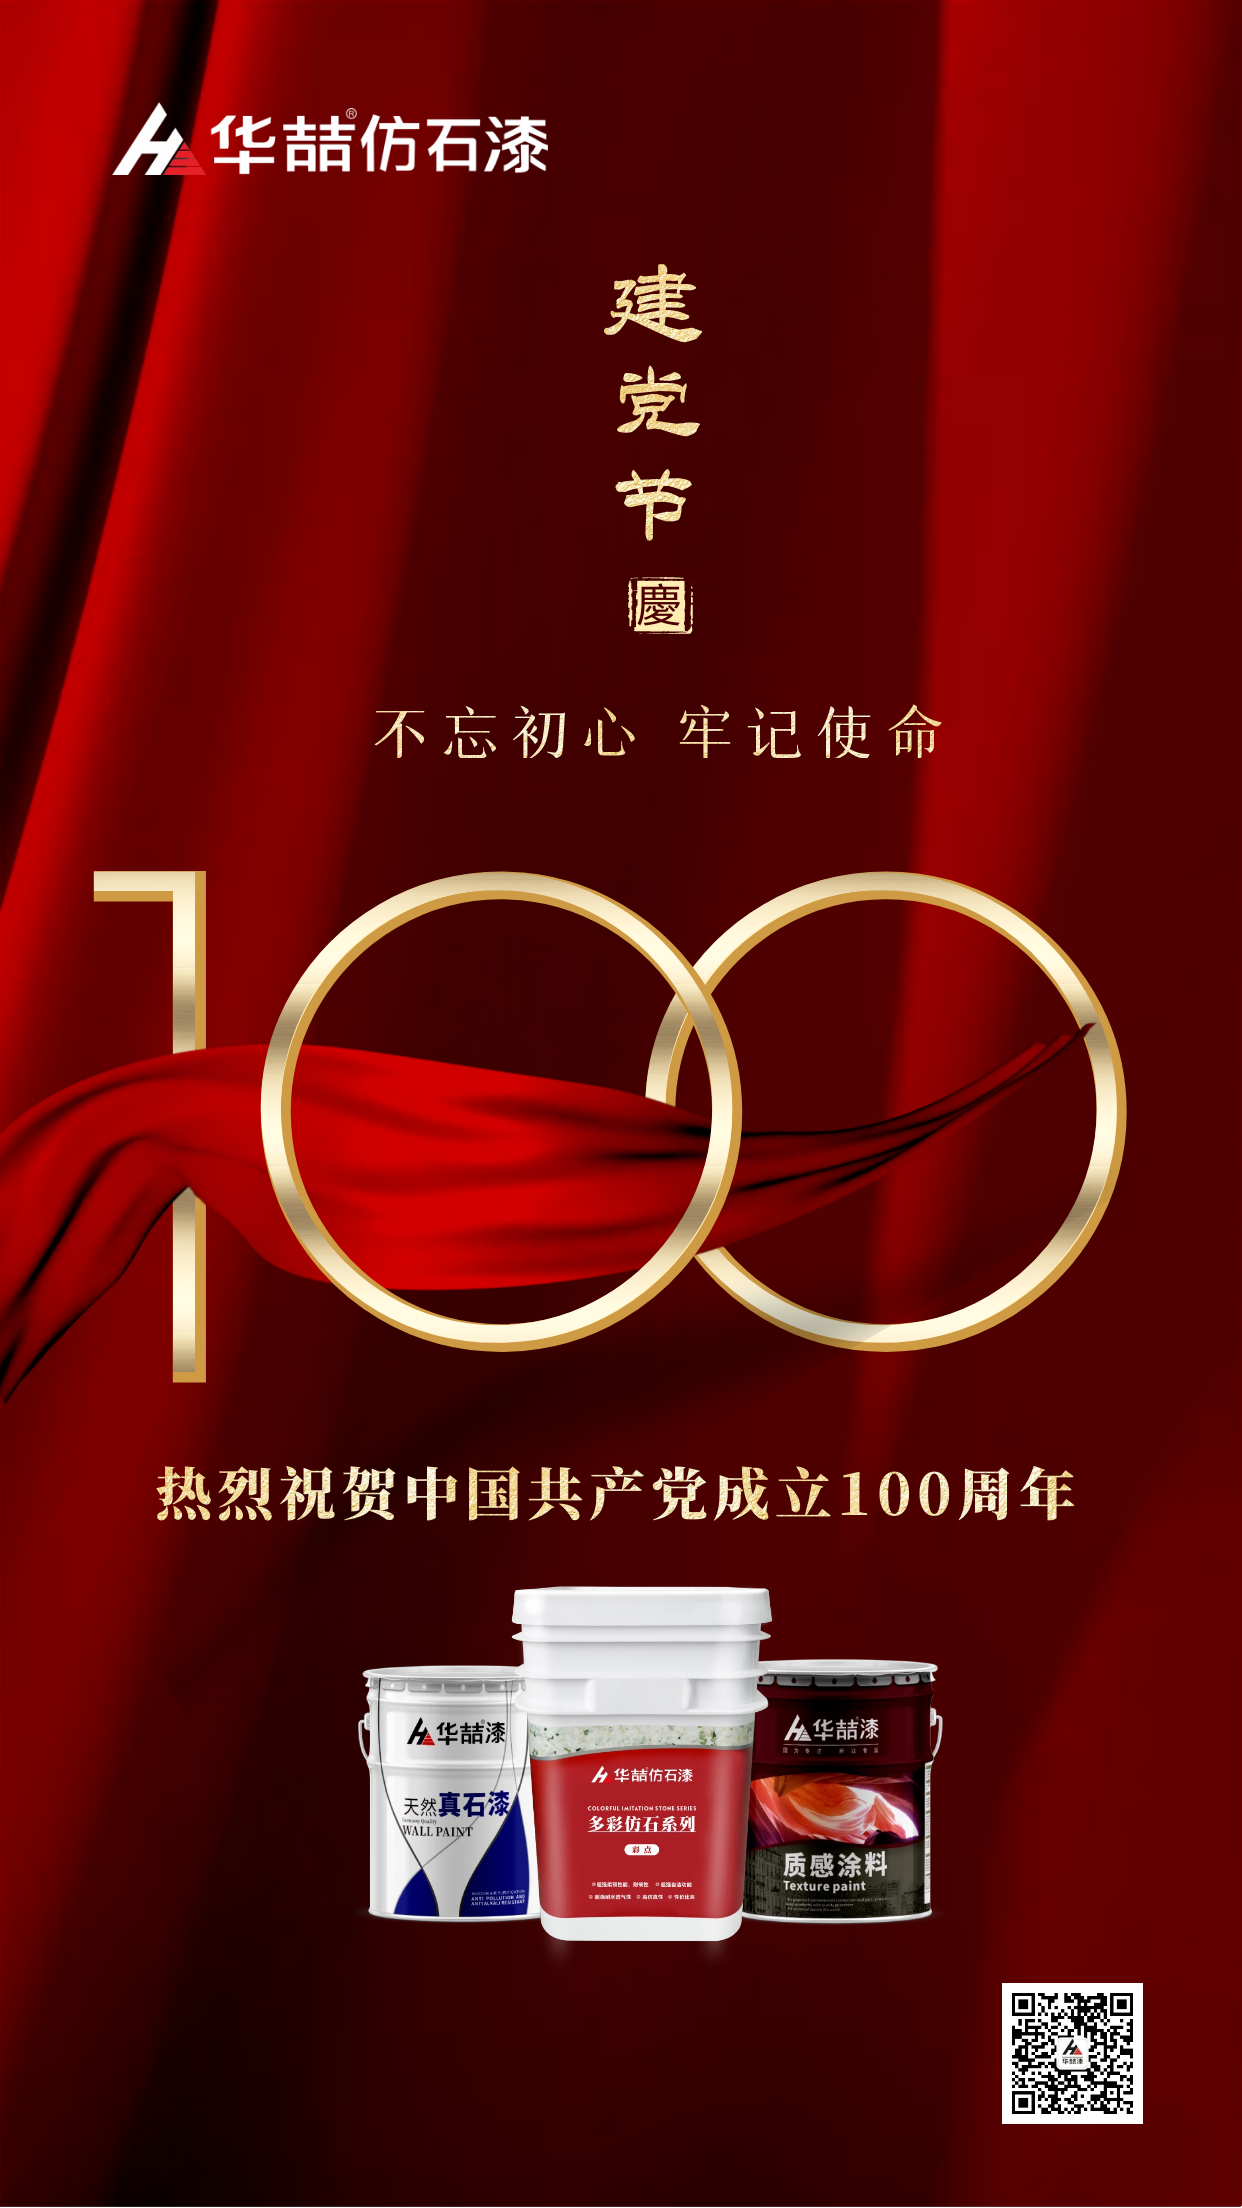 华喆仿石漆 | 热烈祝贺中国共产党建立100周年